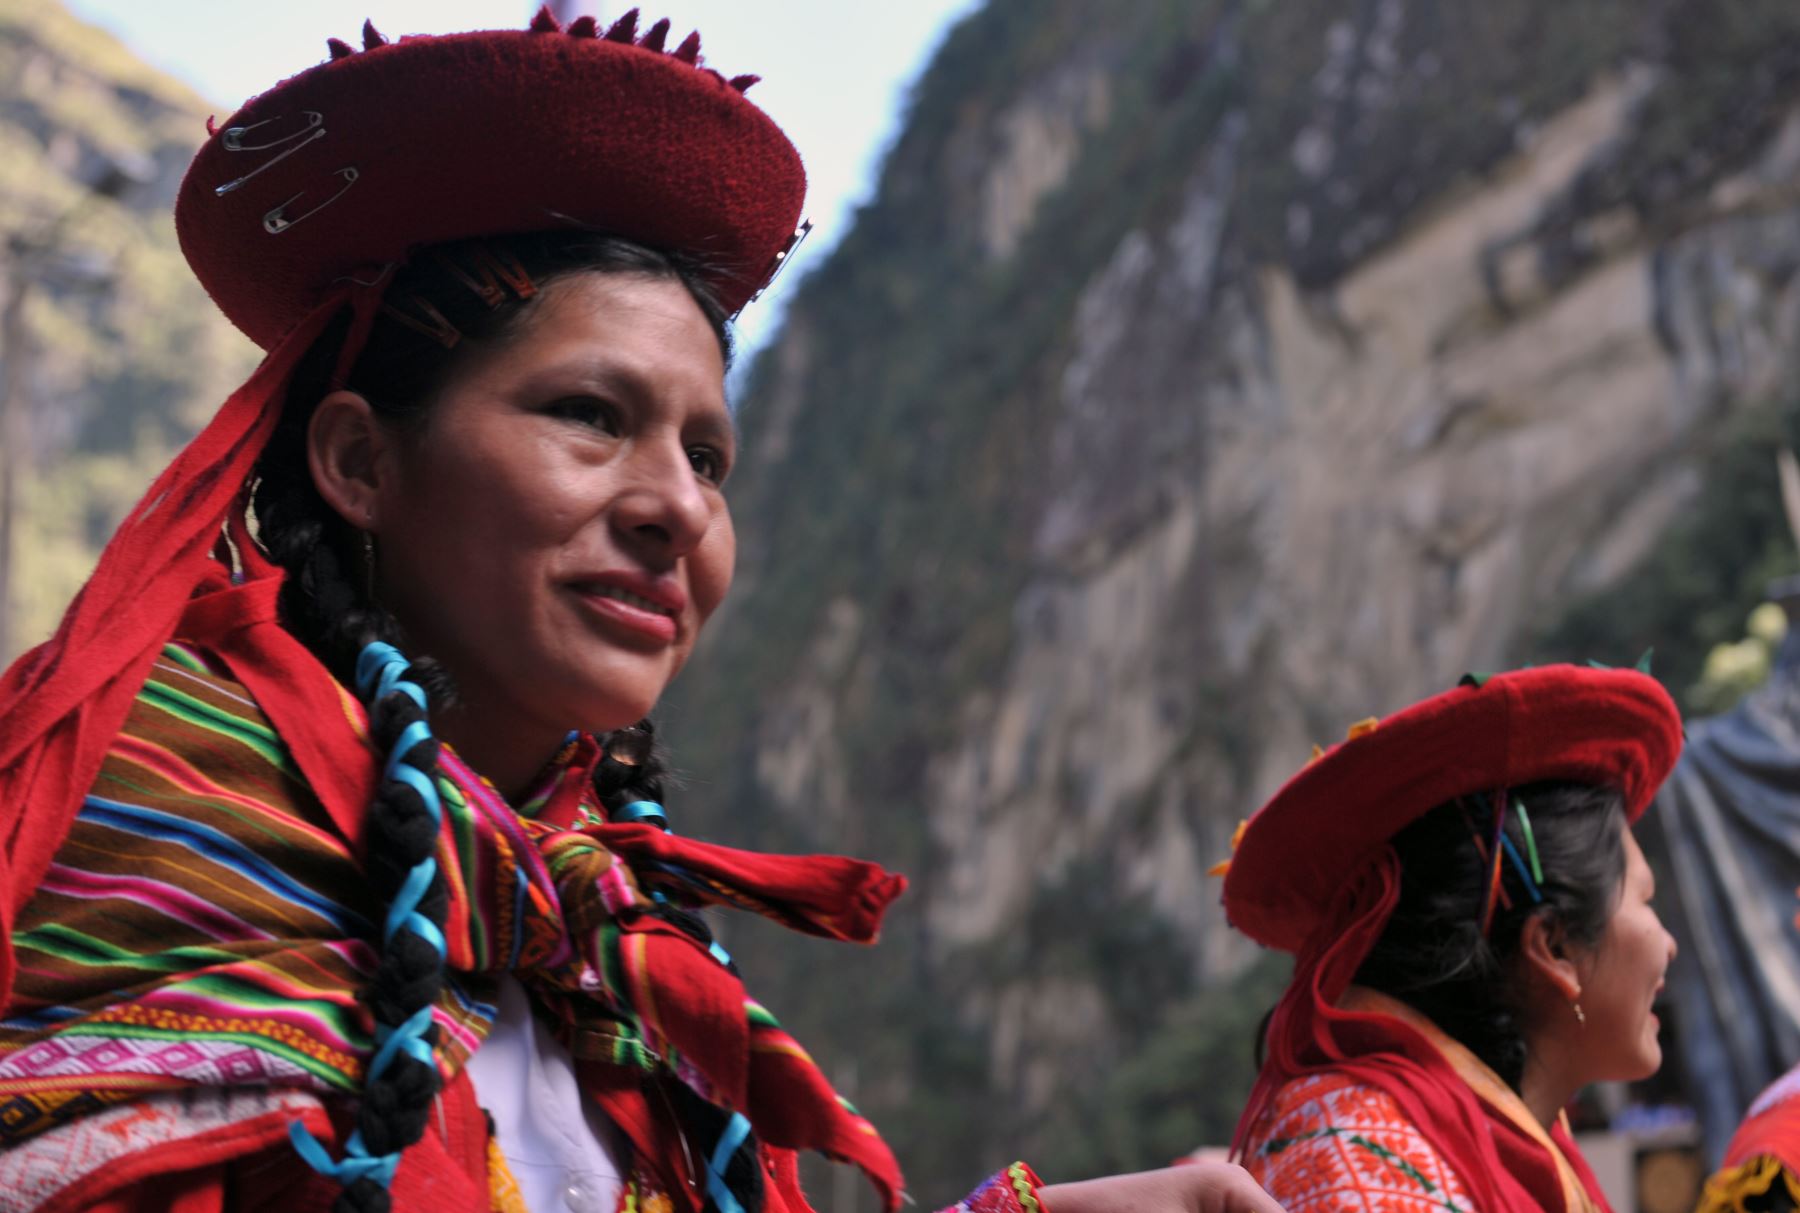 Mujeres en atuendos andinos regionales tradicionales participan en un desfile cívico el 6 de julio de 2011 en la ciudad de Machu Picchu en la base de la montaña bajo la ciudadela inca. AFP